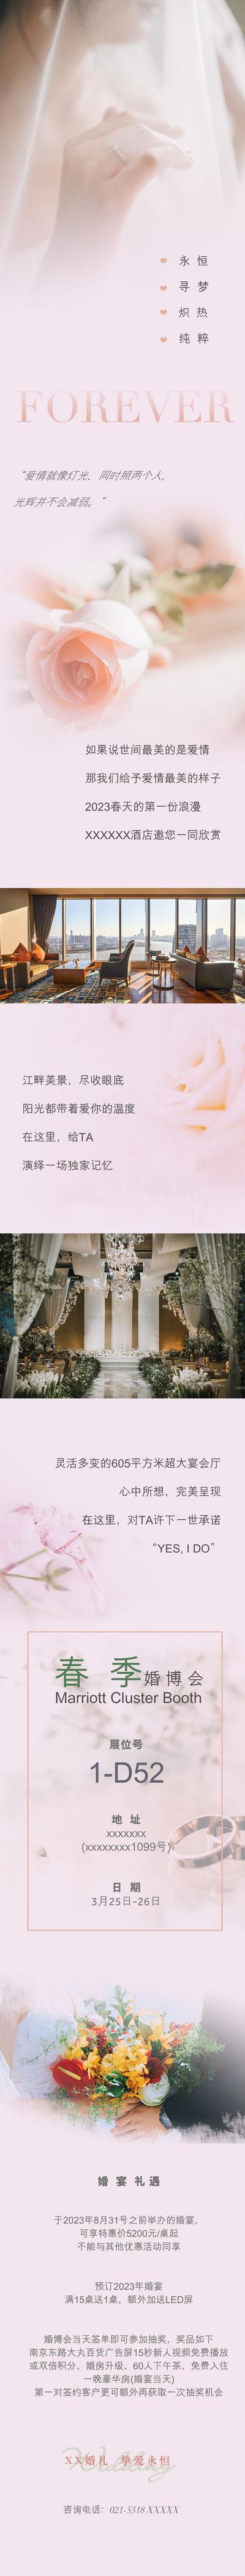 南门网 专题设计 长图 婚博会 婚礼秀 庆典 婚礼 结婚